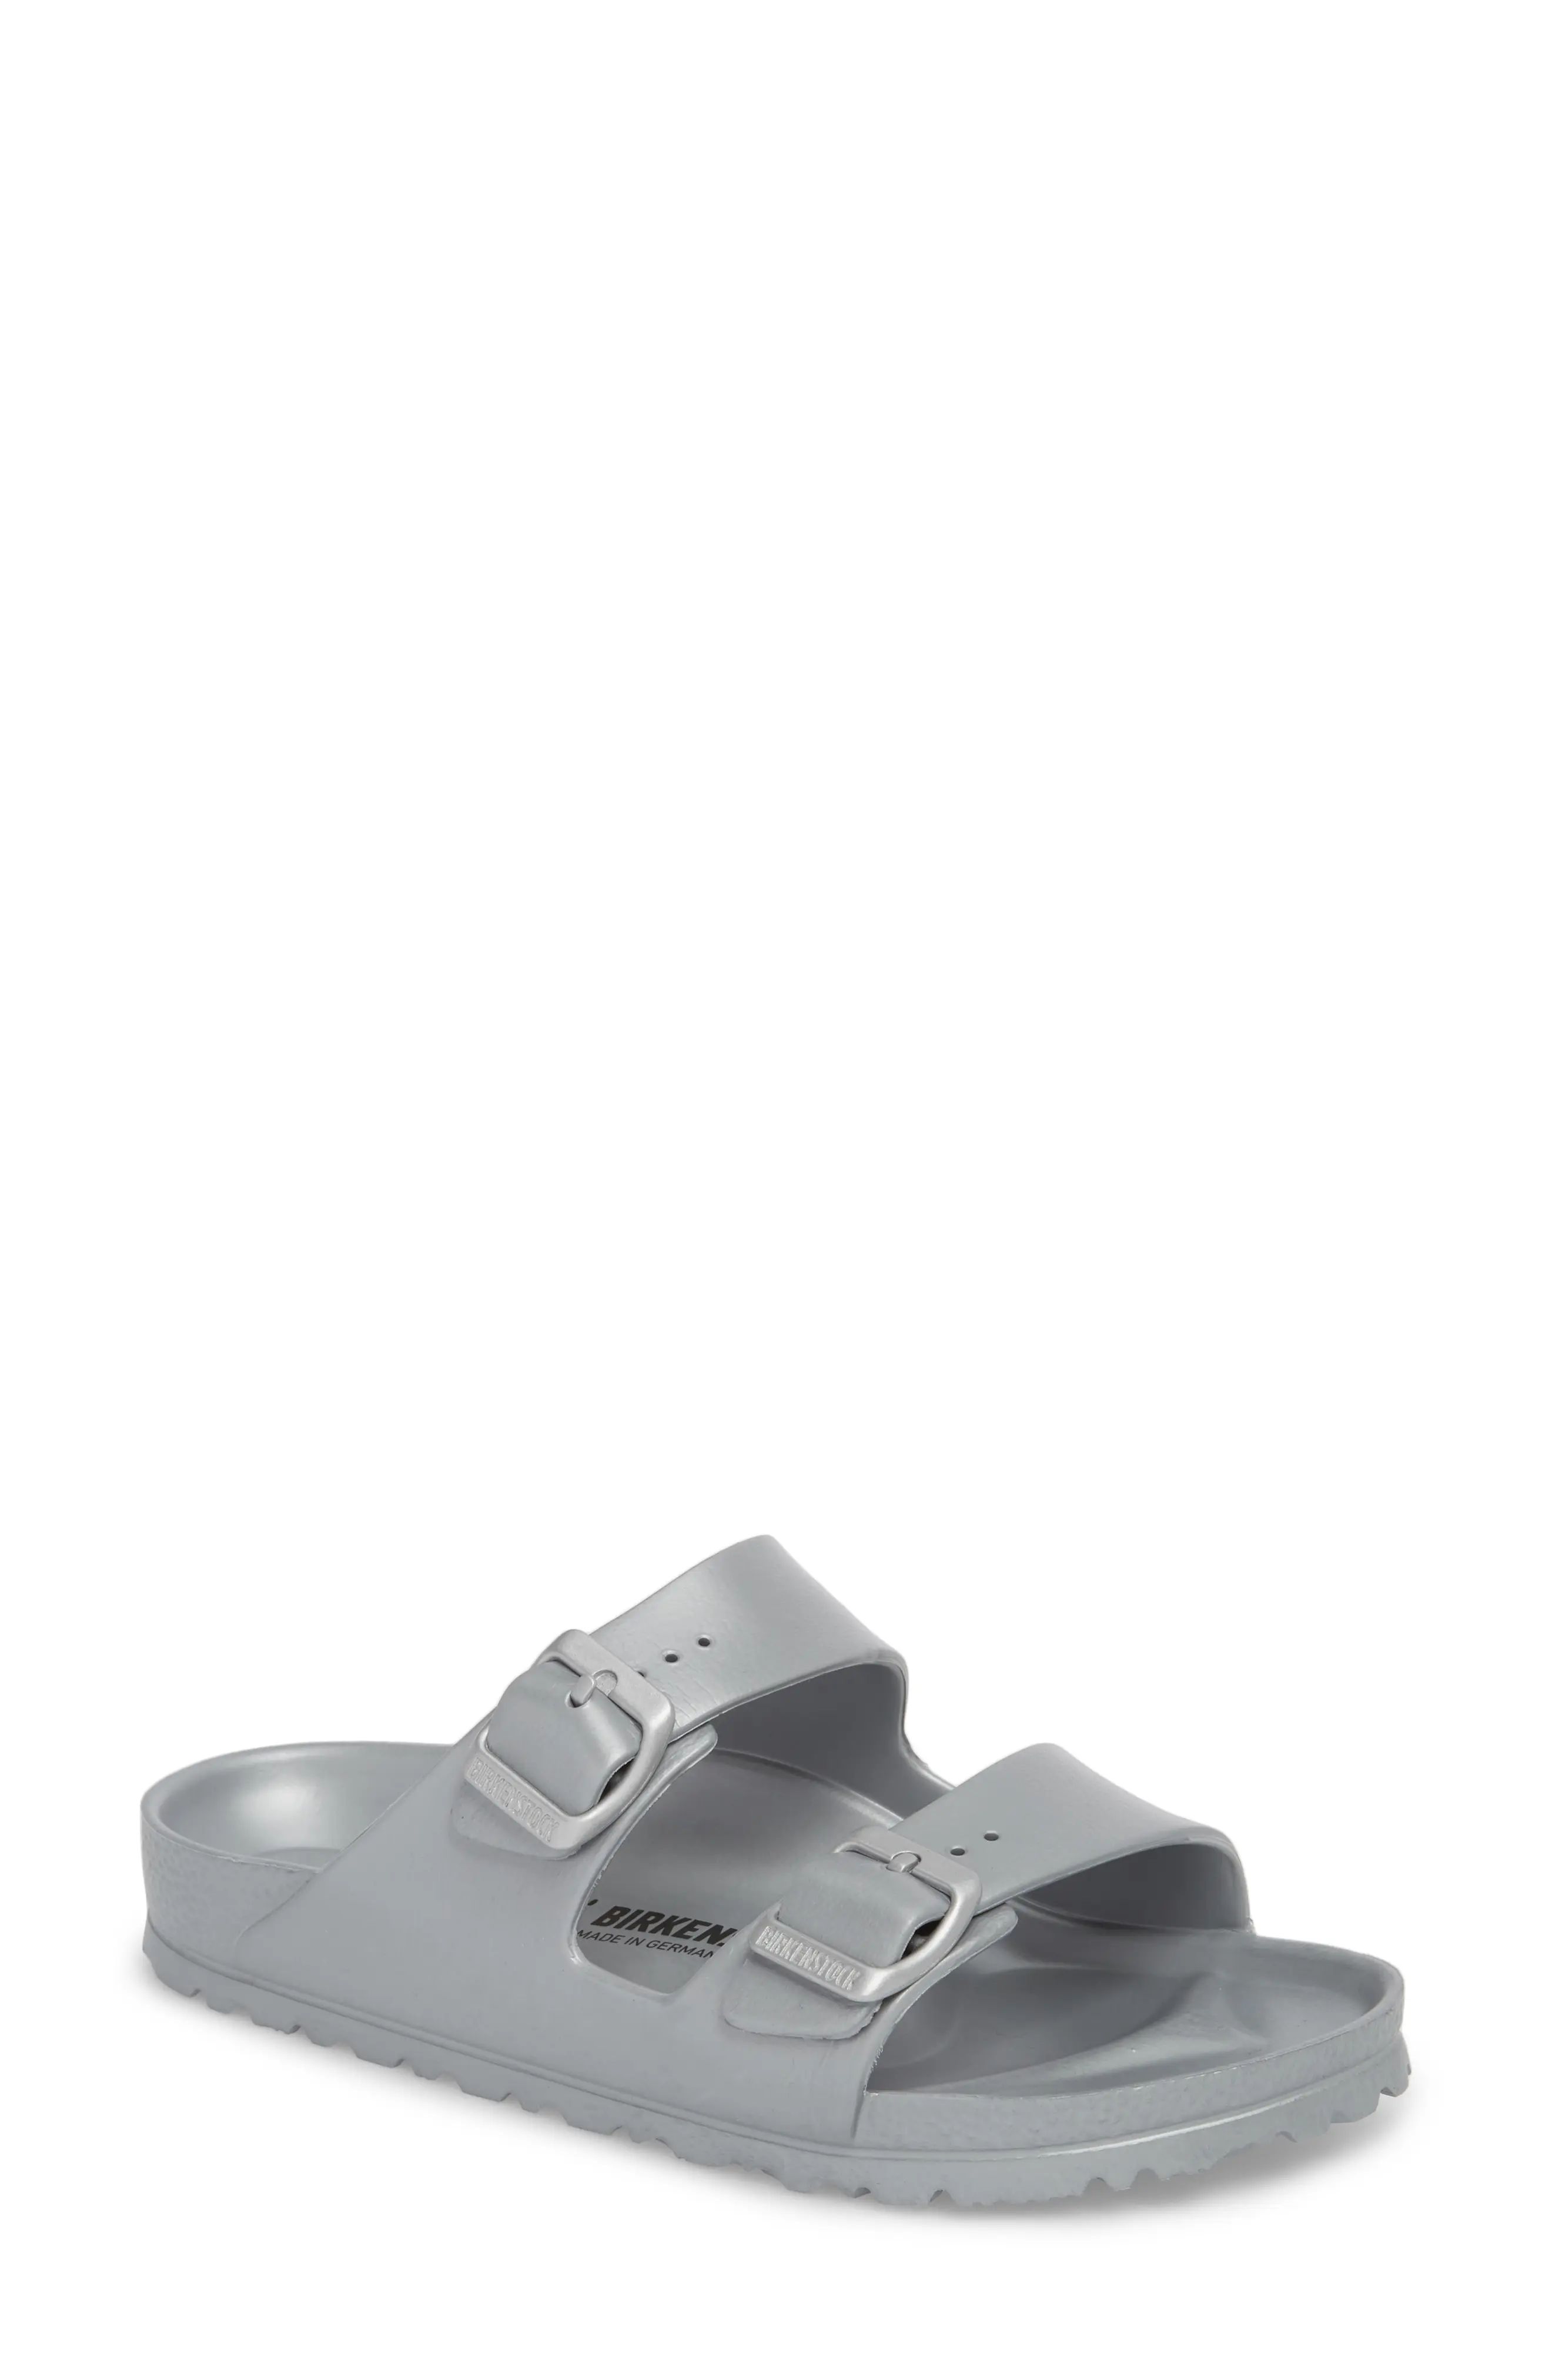 Women's Birkenstock Essentials Arizona Waterproof Slide Sandal, Size 5-5.5US / 36EU B - Metallic (No | Nordstrom